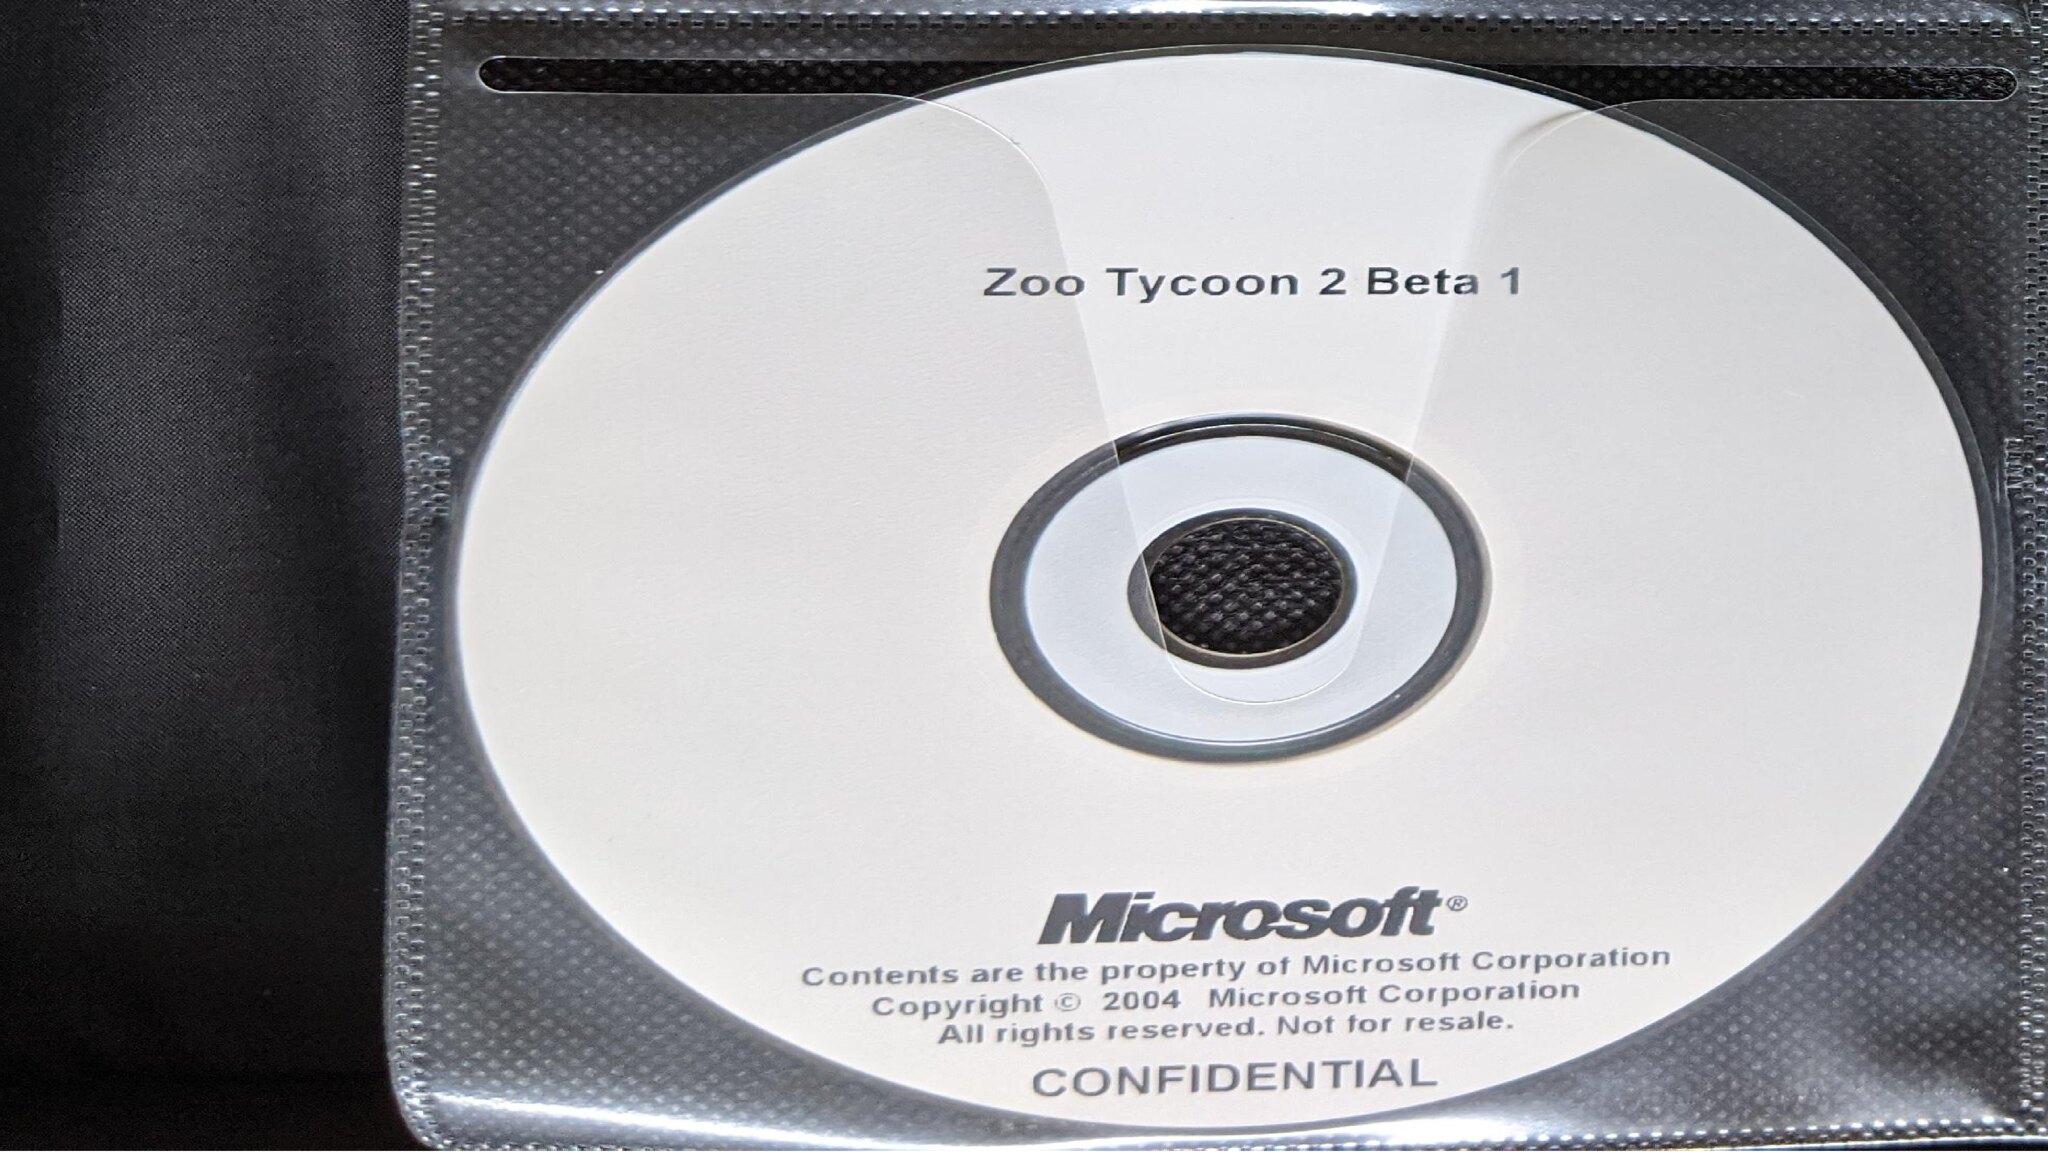 Zoo Tycoon 2 Beta 2... :(